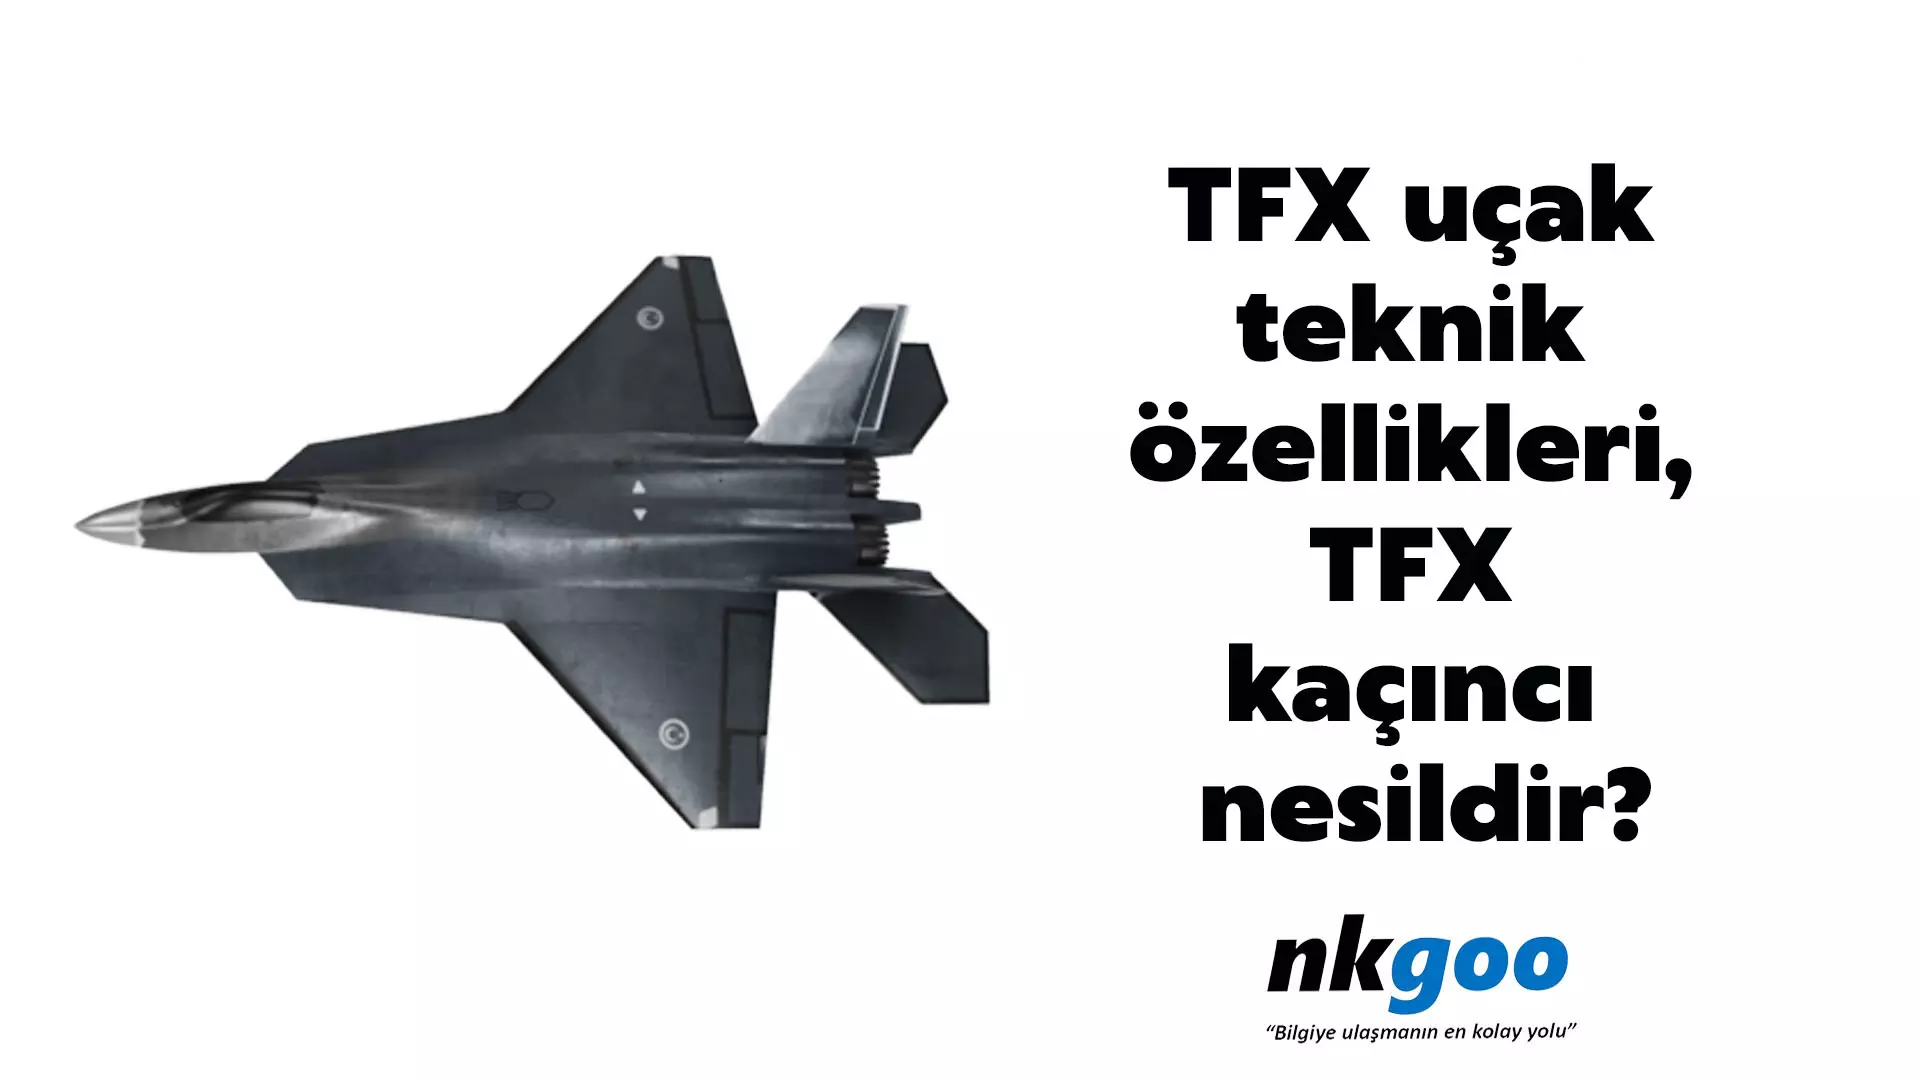 TFX uçak teknik özellikleri, TFX kaçıncı nesildir?